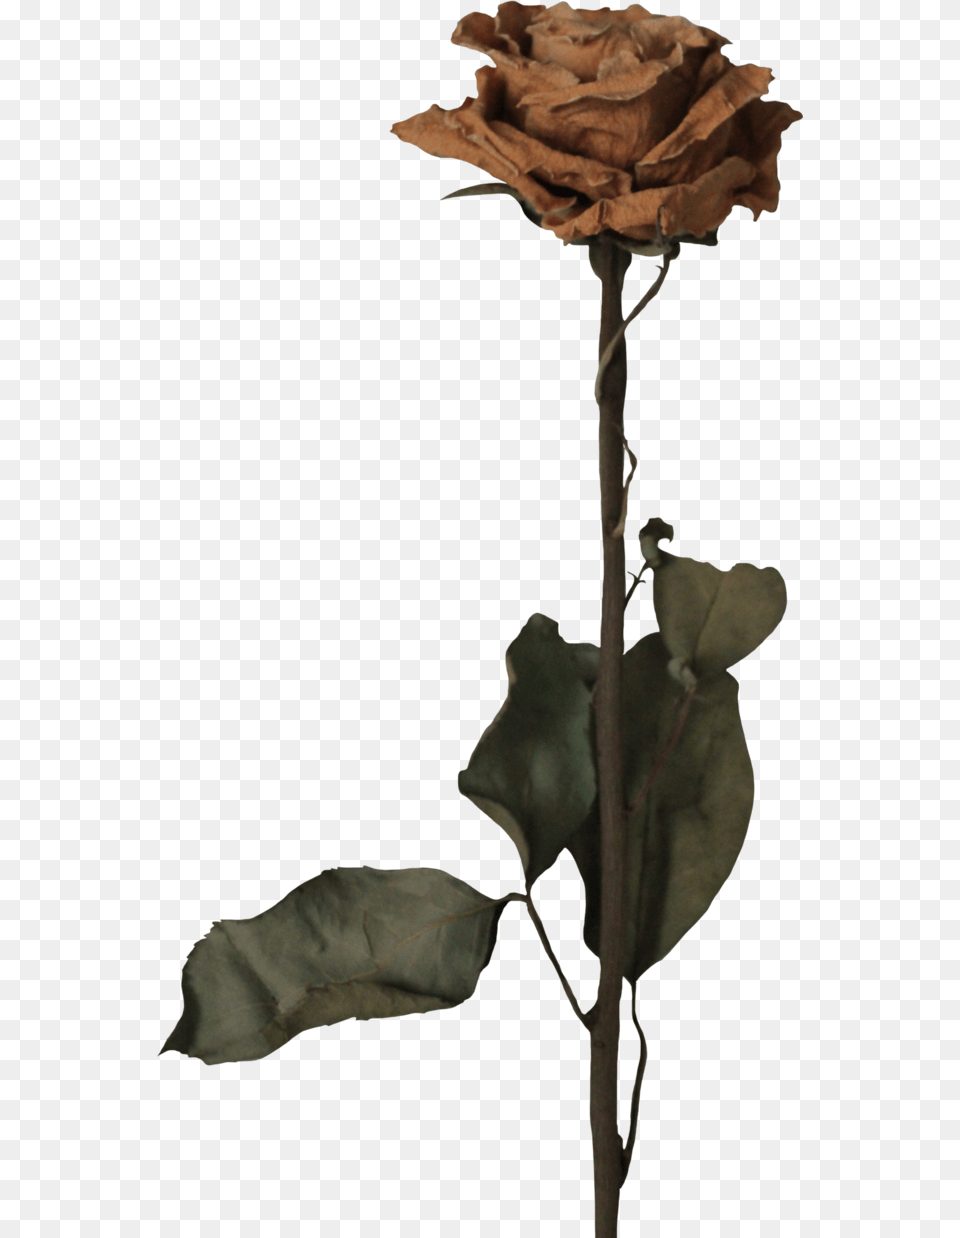 Dead Flower Blackbear Poster, Leaf, Plant, Rose, Tree Free Transparent Png